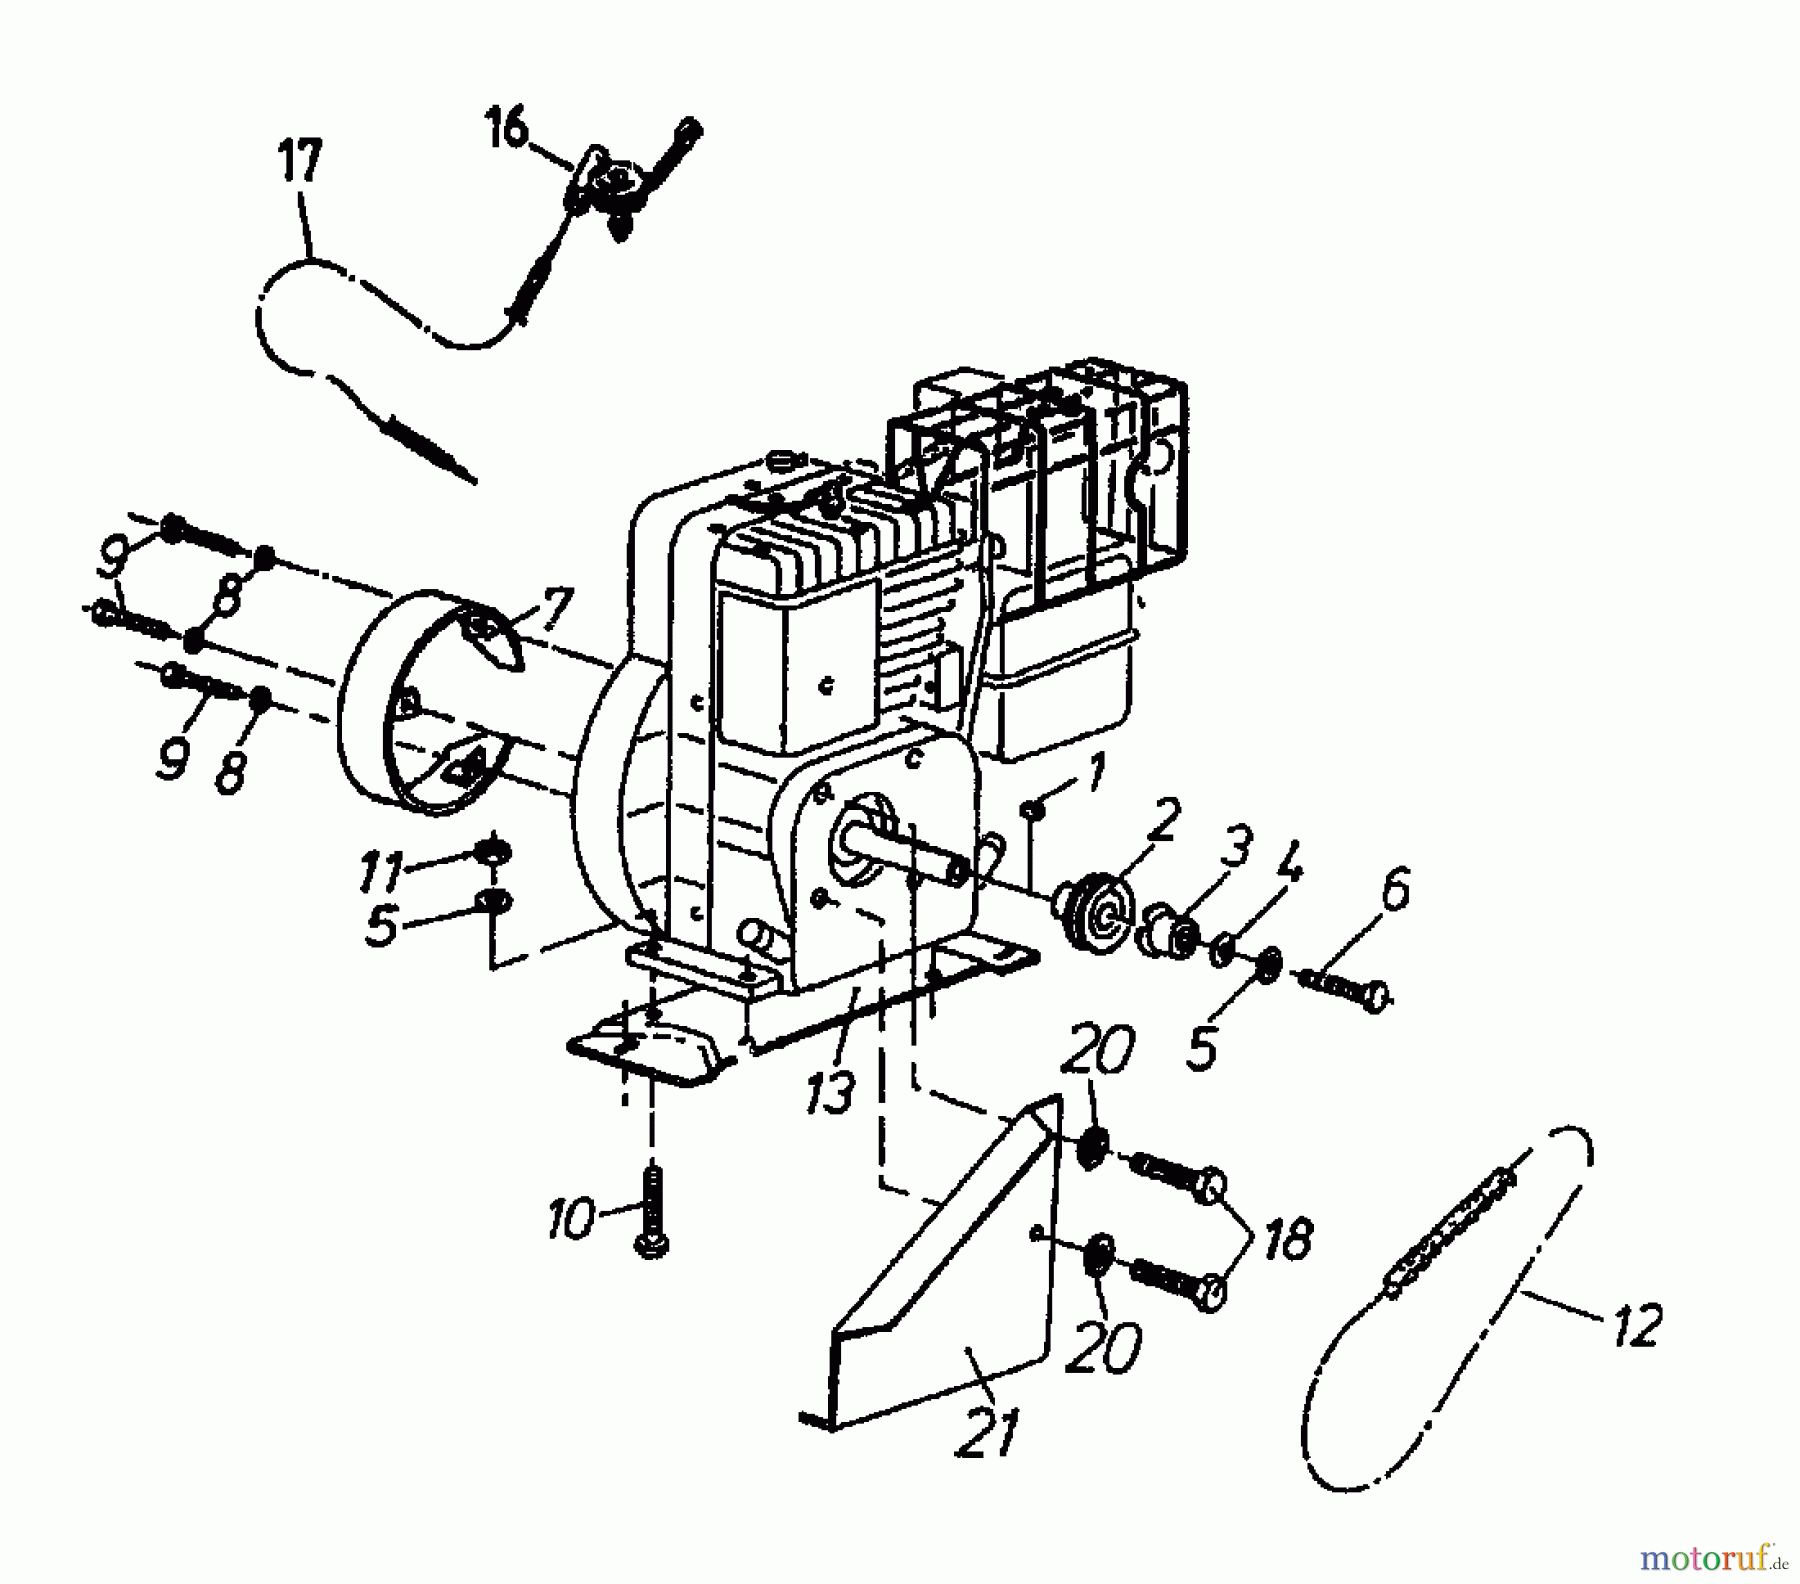  Gutbrod Cutter bar mower BM 91 07517.02  (1994) Belt, Engine, Fuel tank